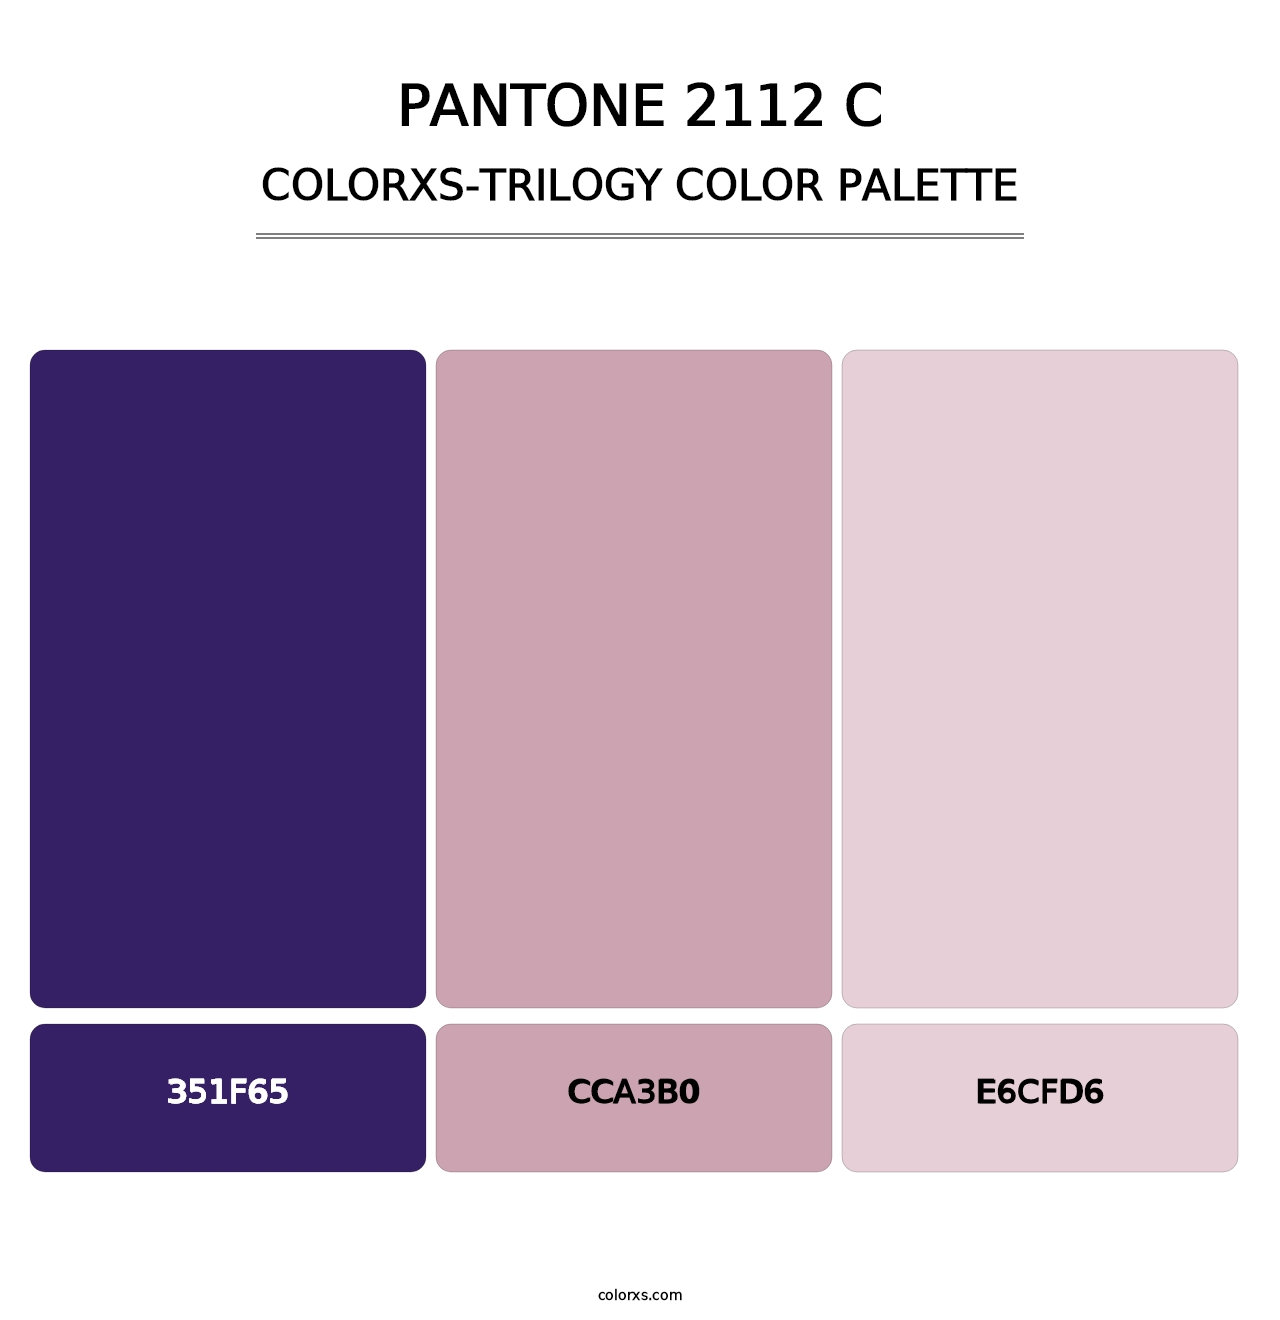 PANTONE 2112 C - Colorxs Trilogy Palette